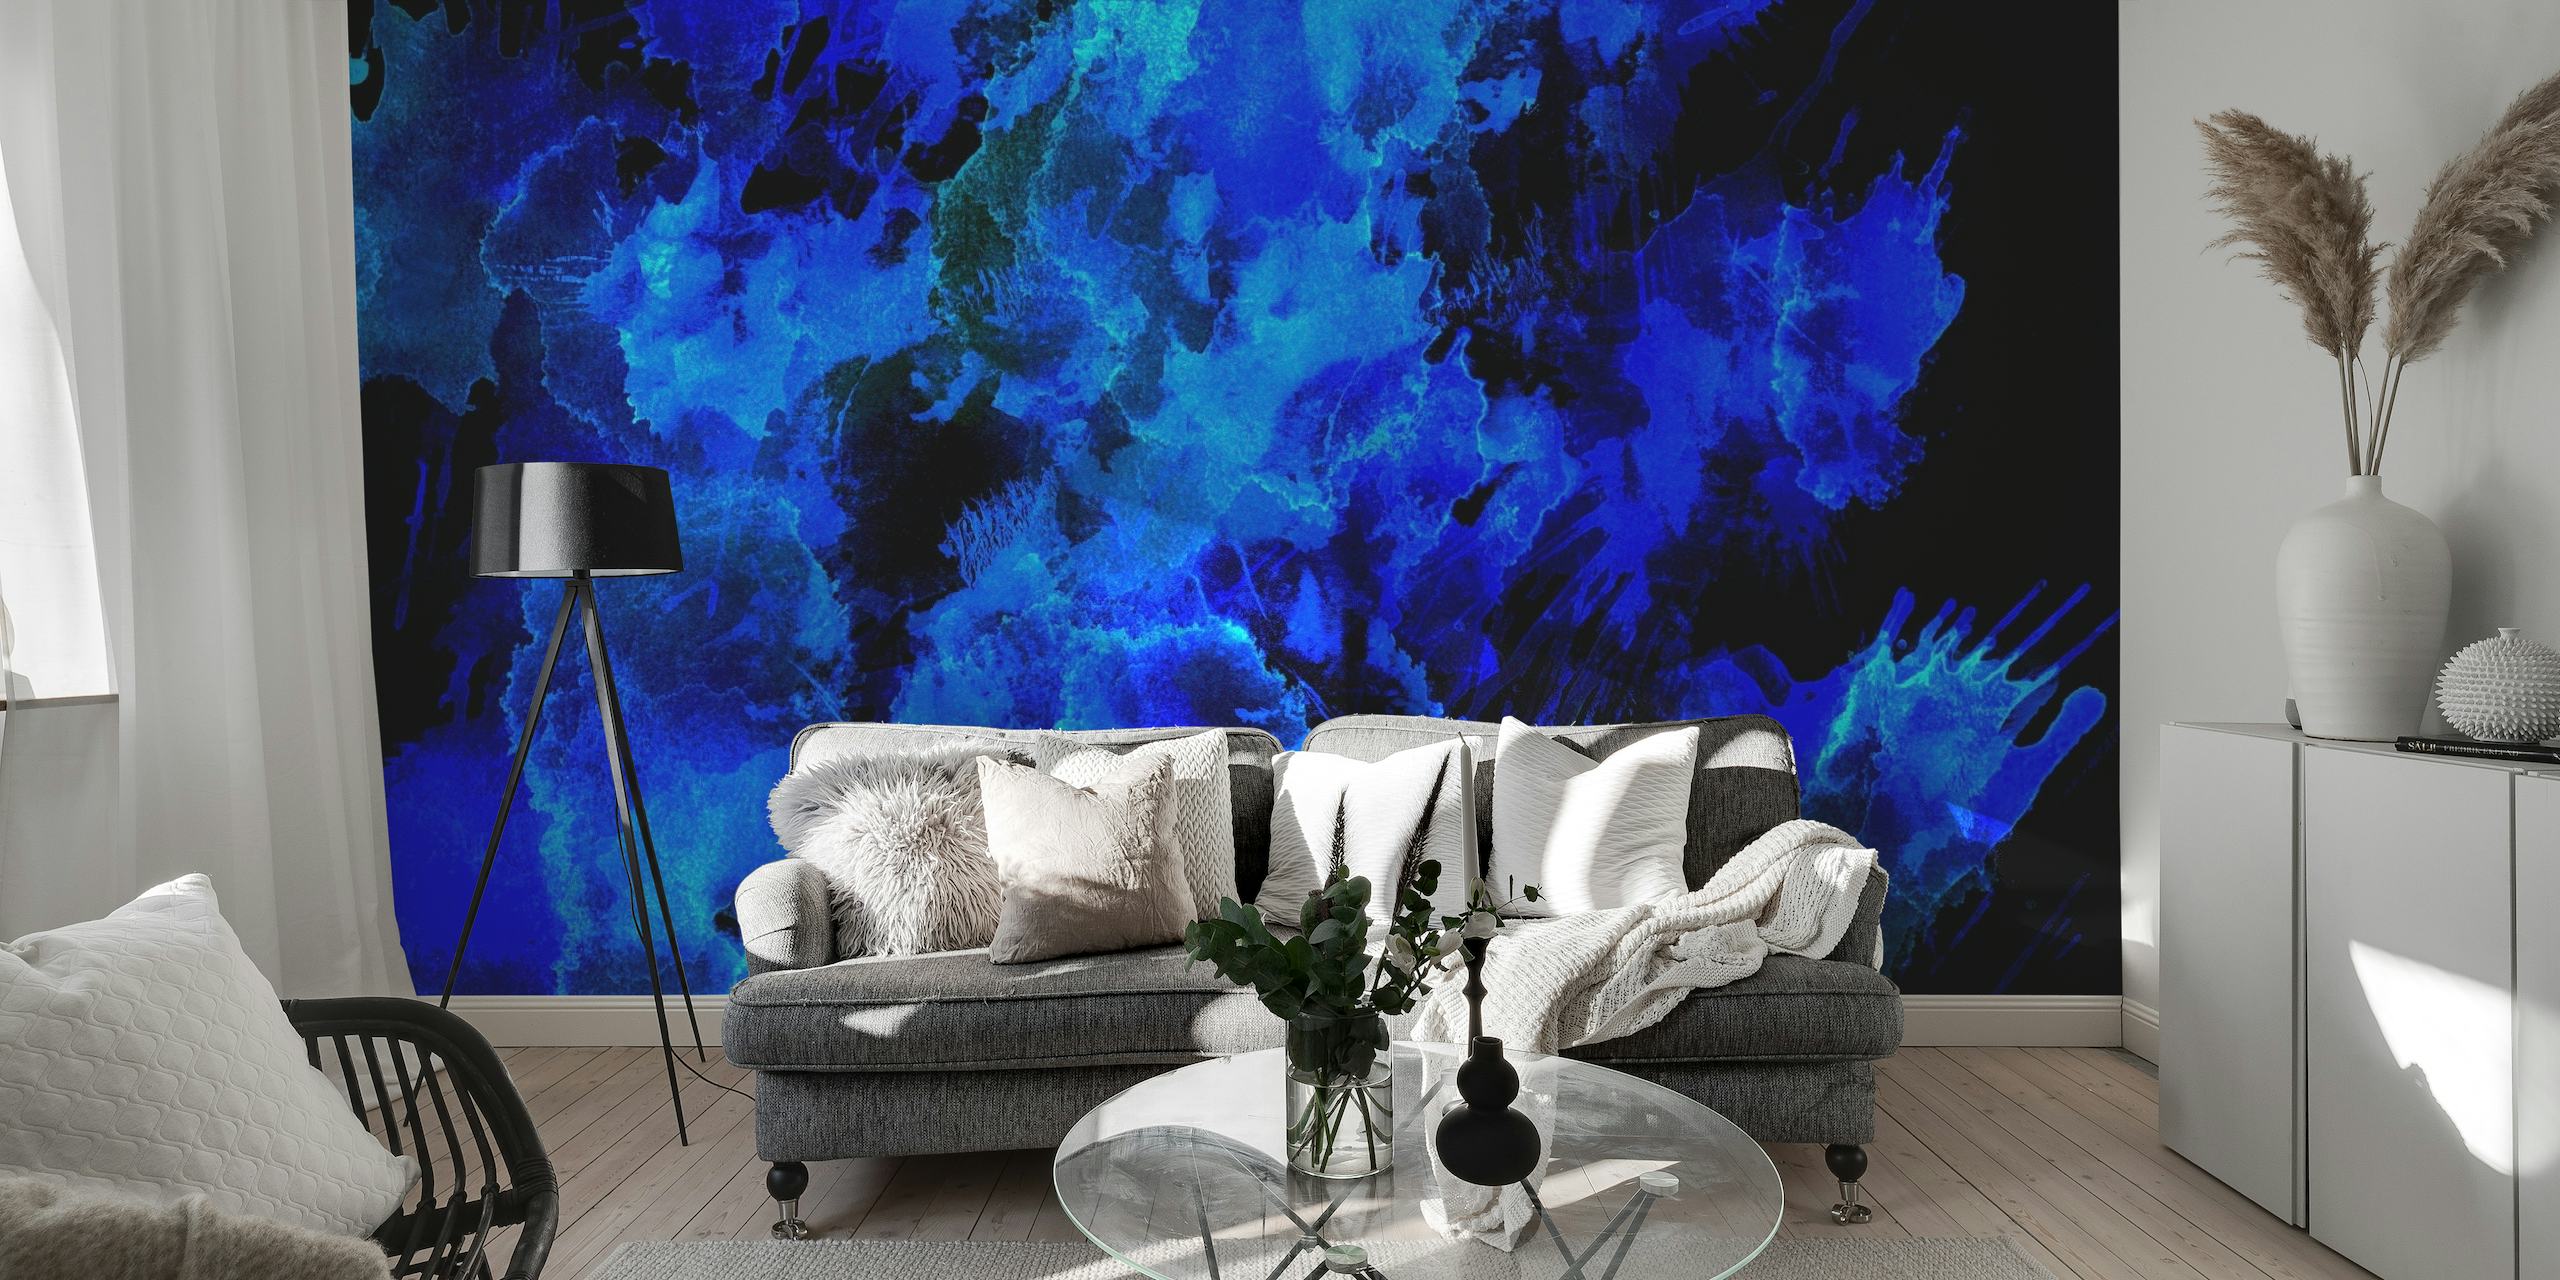 Abstrakti sinisen sävyinen seinämaalaus, joka vetoaa yötaivaan tai valtameren syvyyksiin